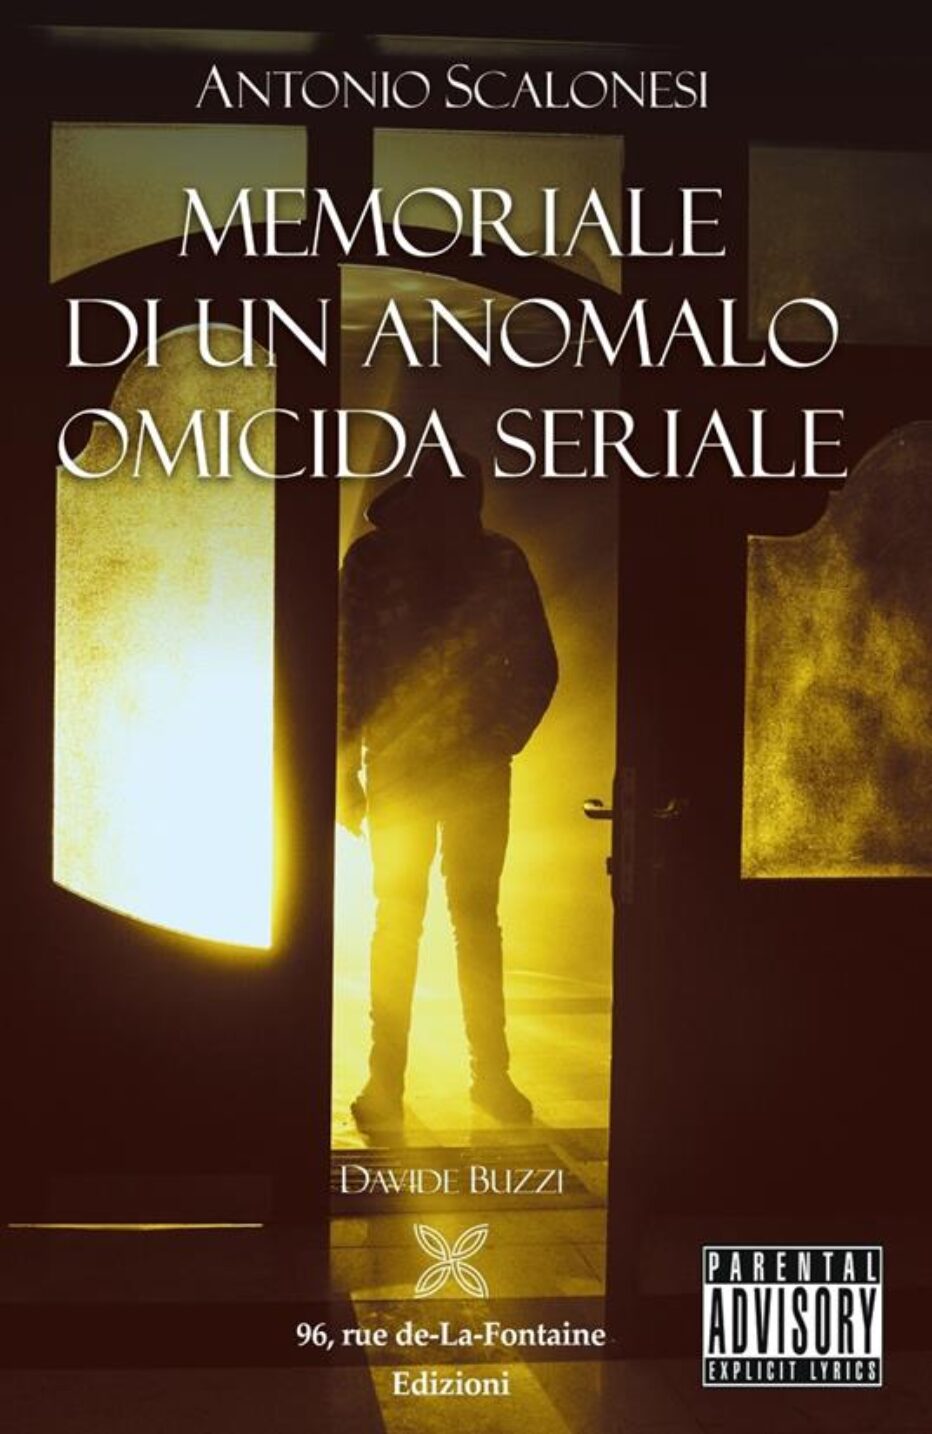 “Antonio Scalonesi. Memoriale di un anomalo omicida seriale” di Davide Buzzi